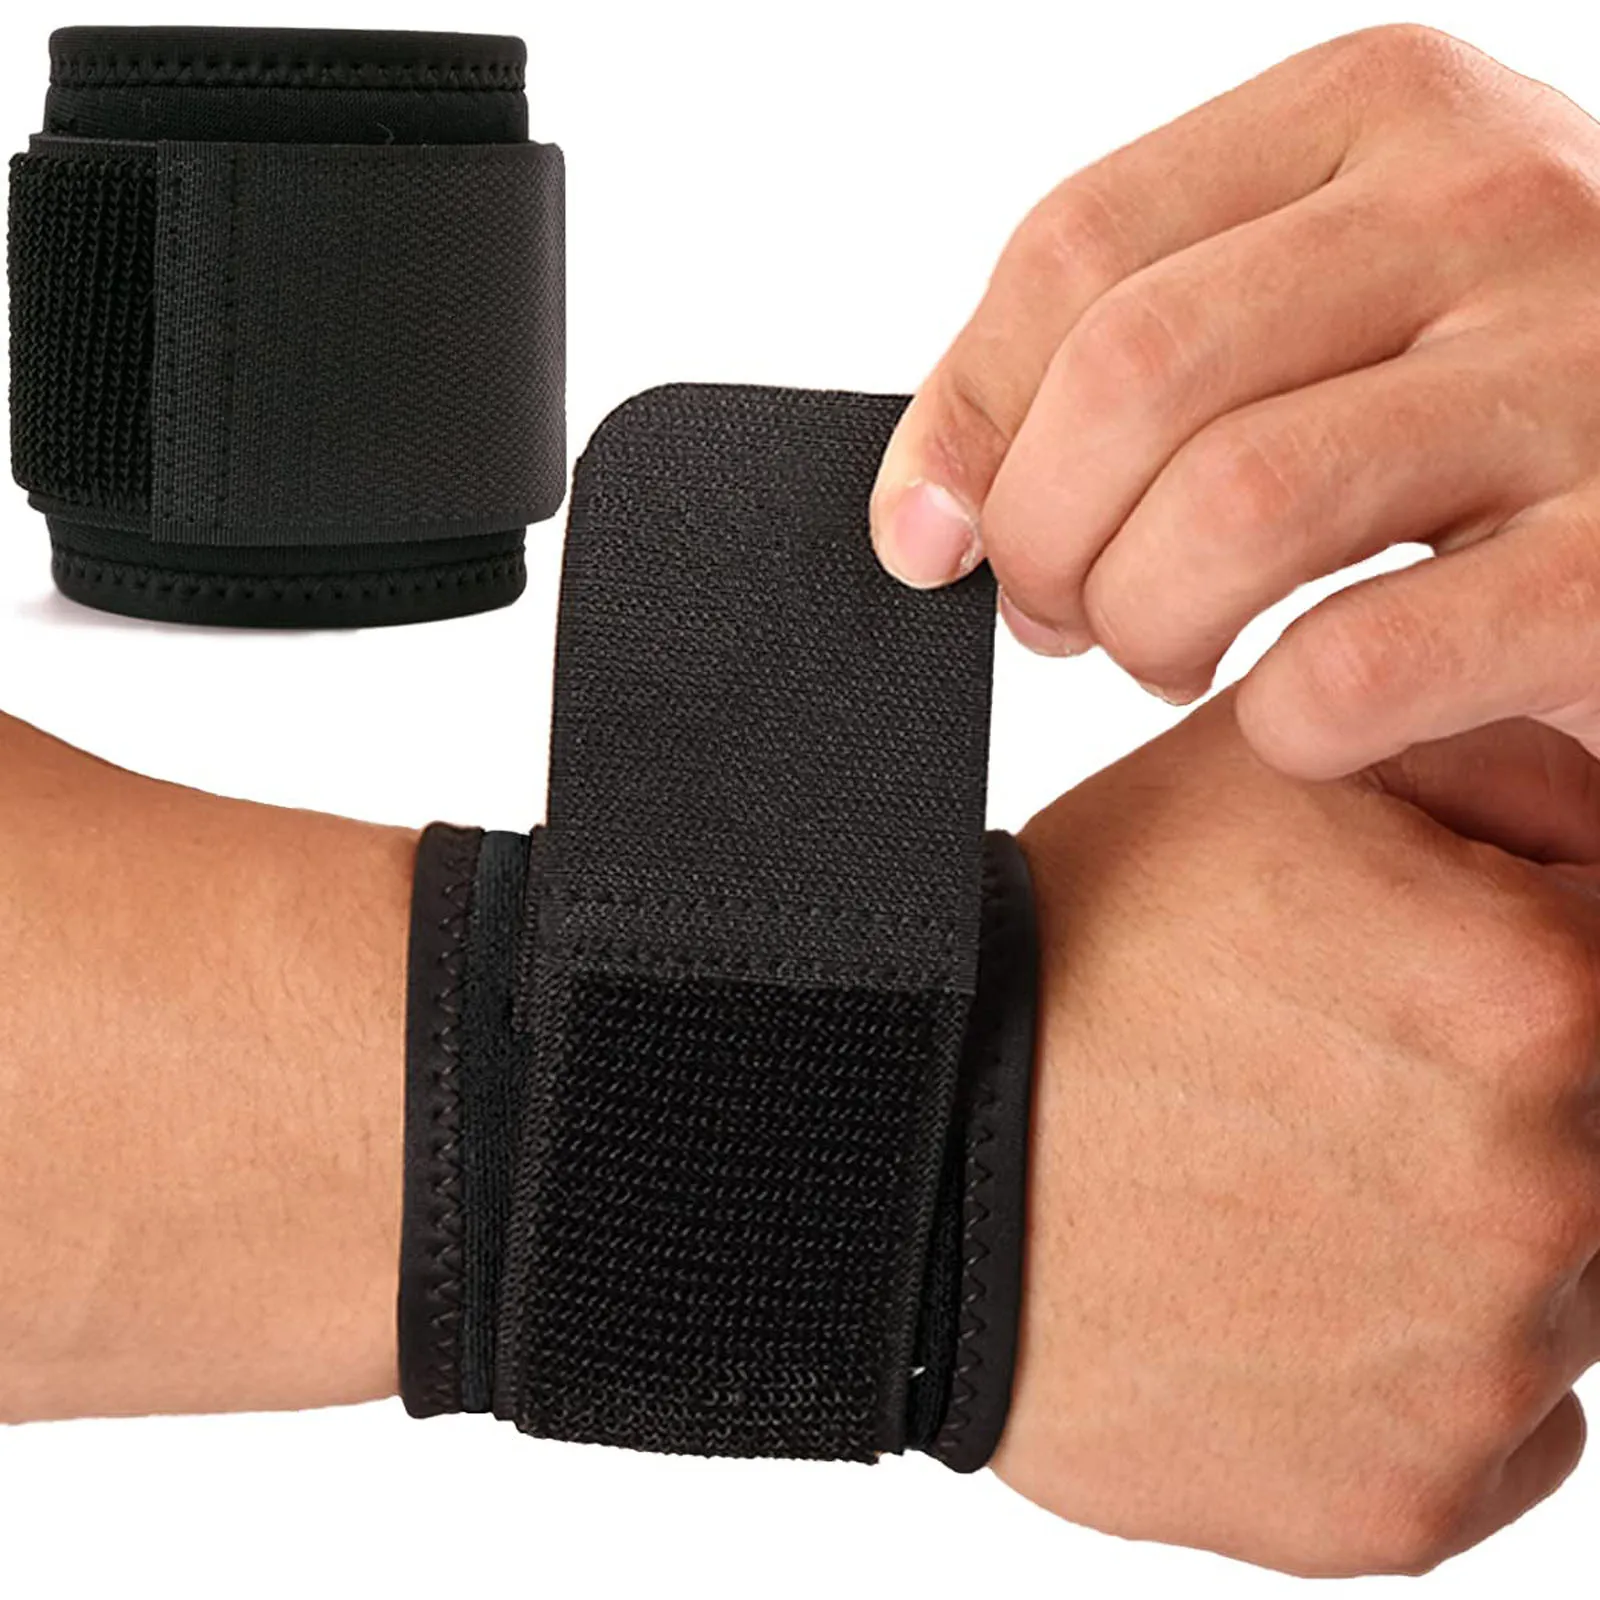 

1 шт. спортивный браслет регулируемый спортивный бандаж для запястья ремень для поддержки тренажерного зала компрессионная защита для запястья защита для фитнеса